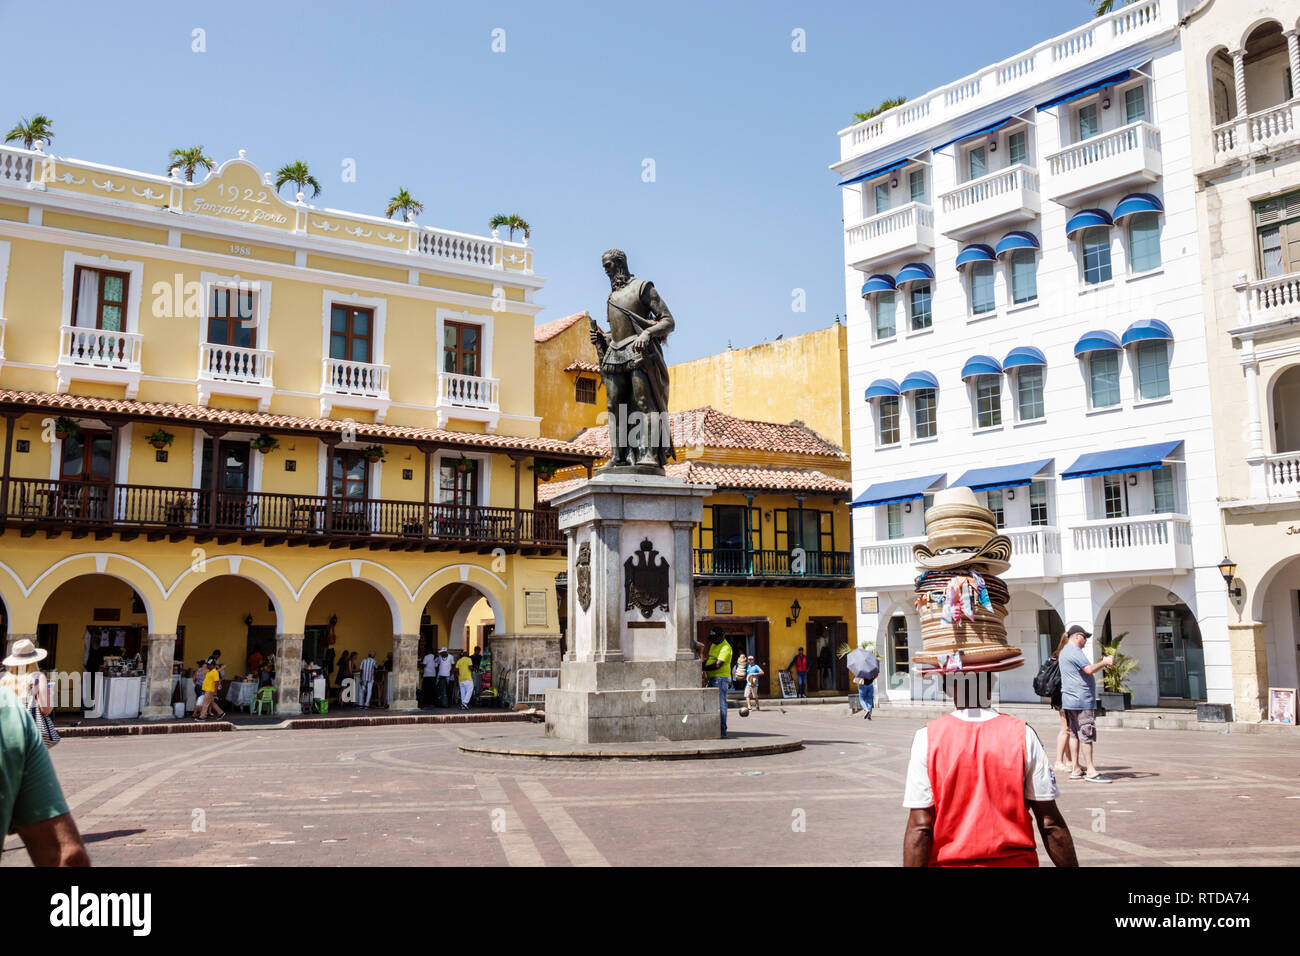 Cartagena Colombia, residenti ispanici, Plaza de los Coches, piazza pubblica, scultura statua, fondatore della città, Don Pedro de Heredia, conquistad spagnolo Foto Stock